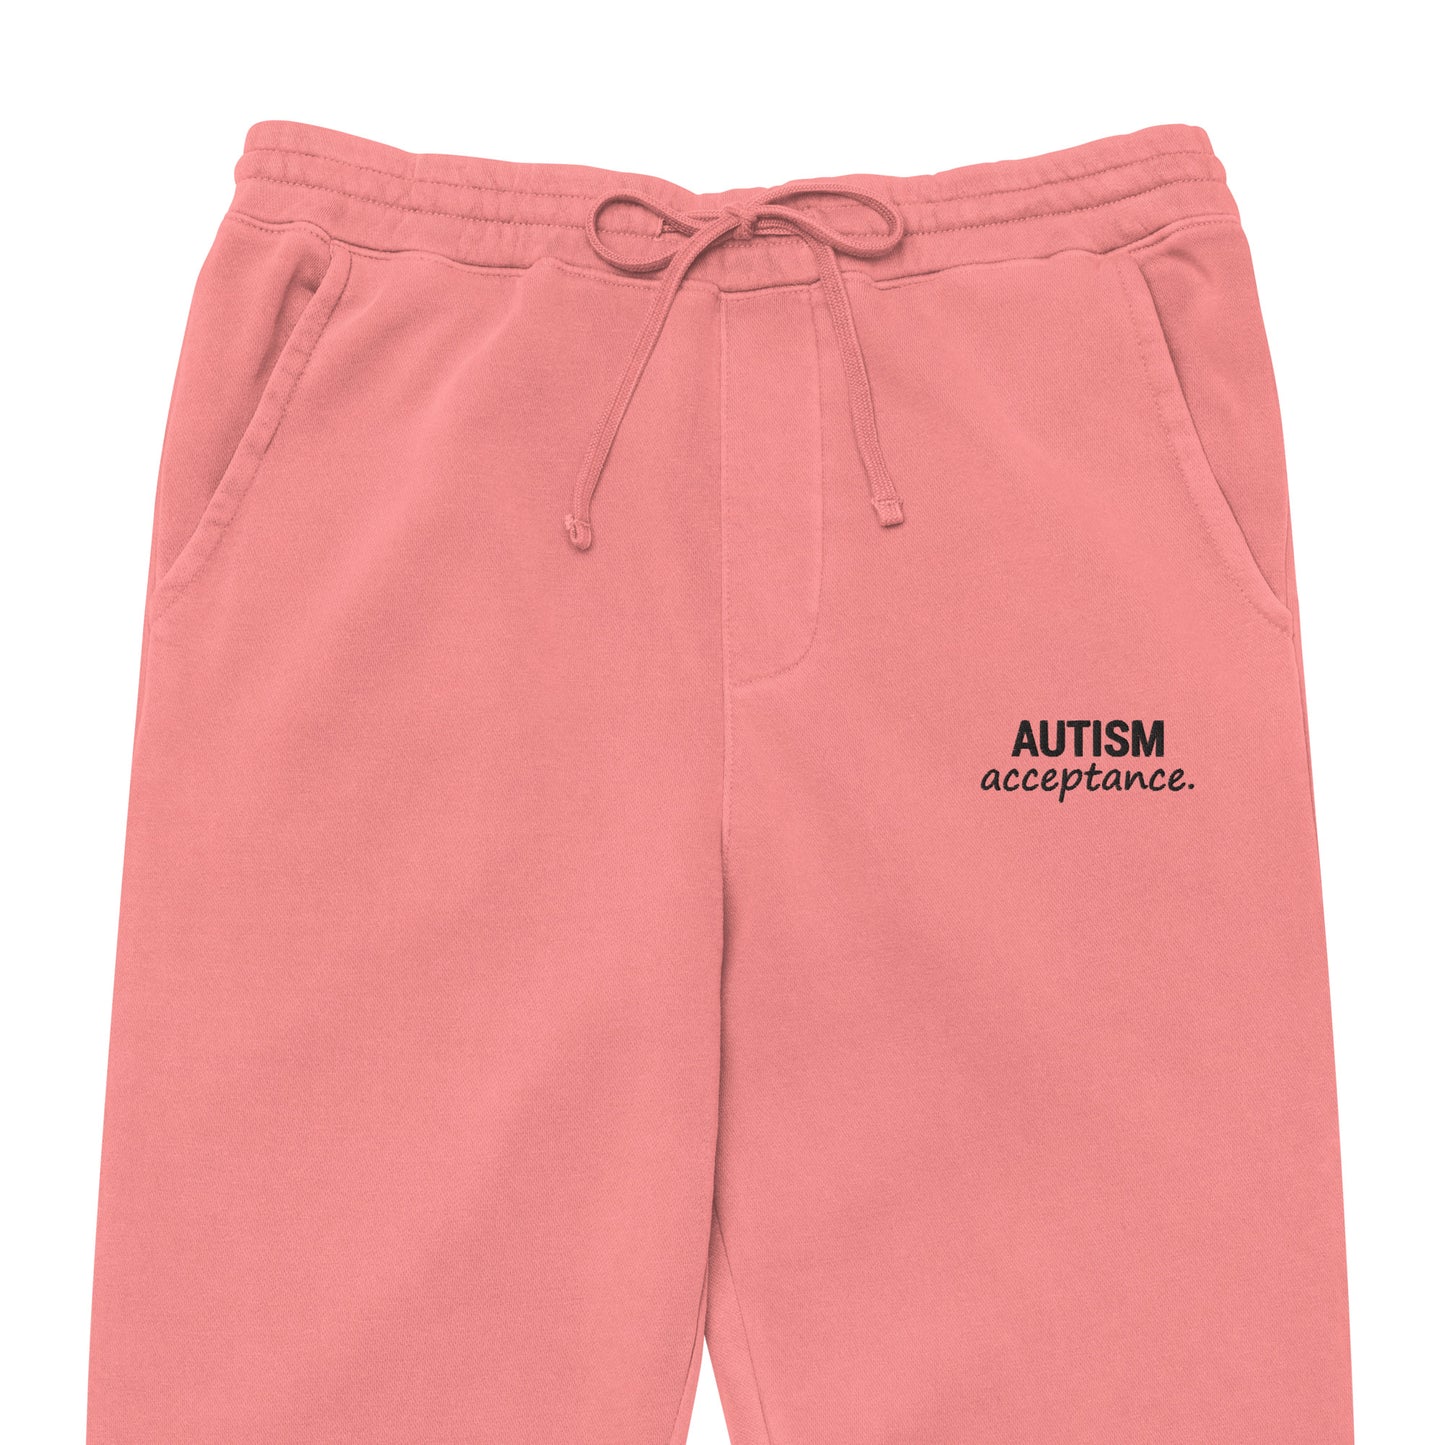 Autism Acceptance Sweatpants (Pigment Pink)